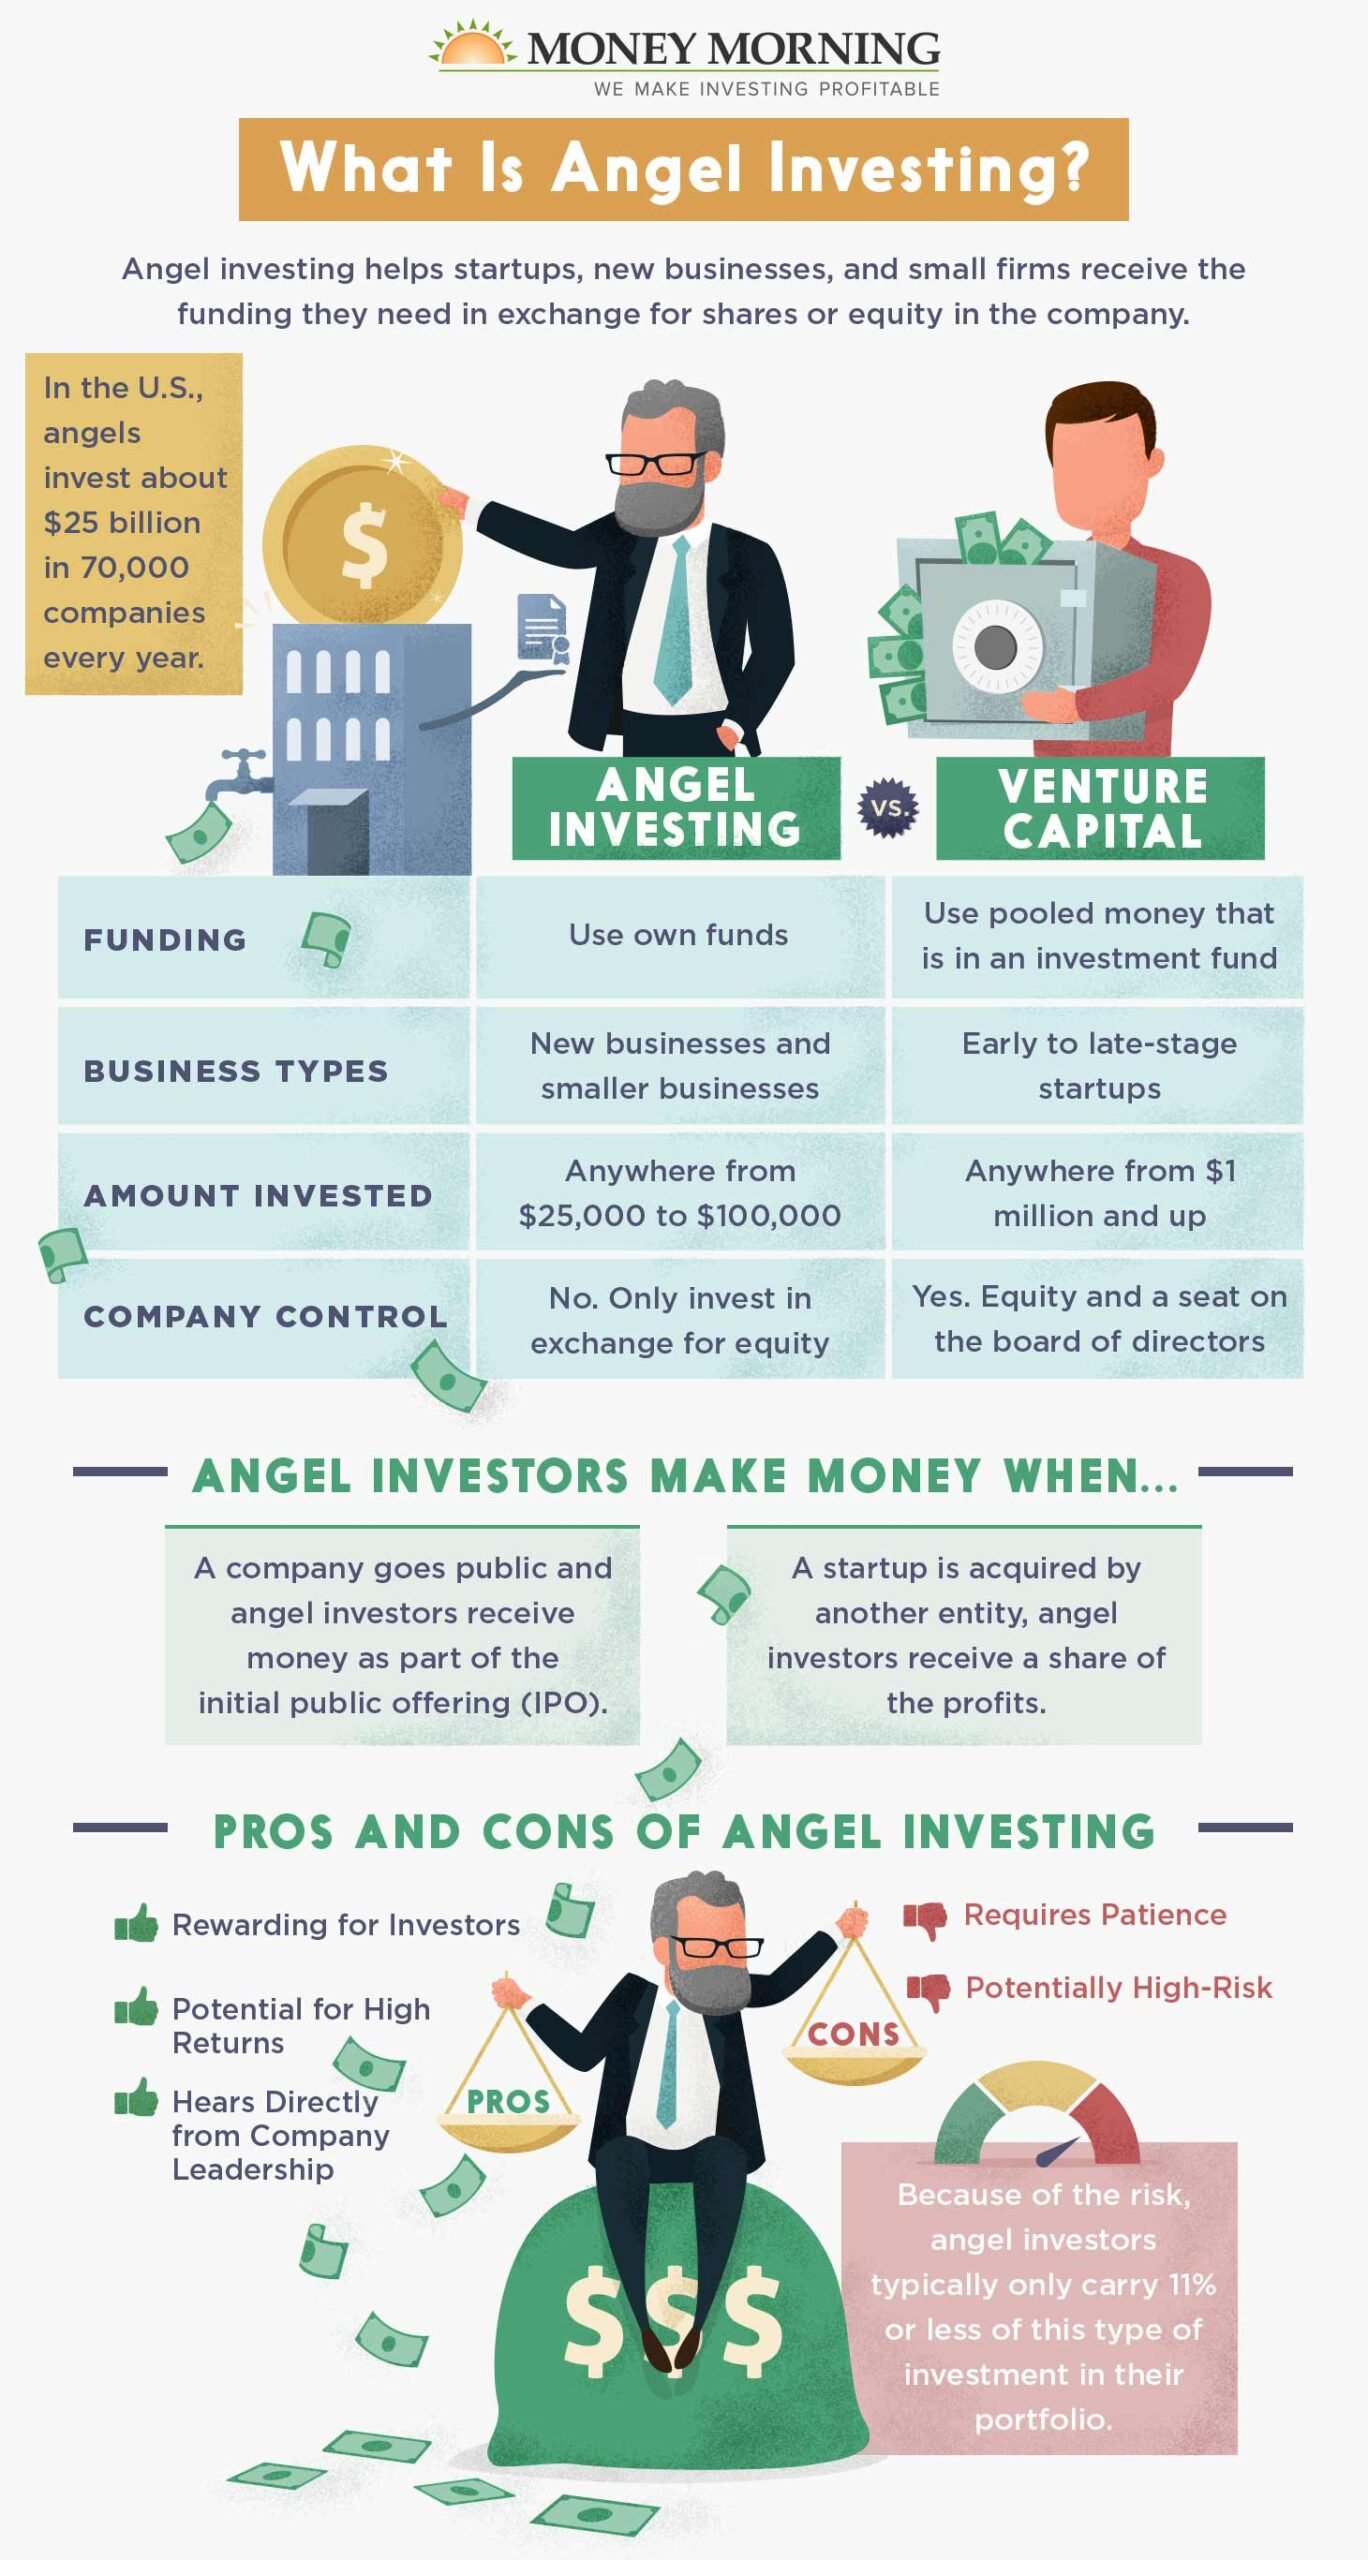 how do angel investors make money? 2